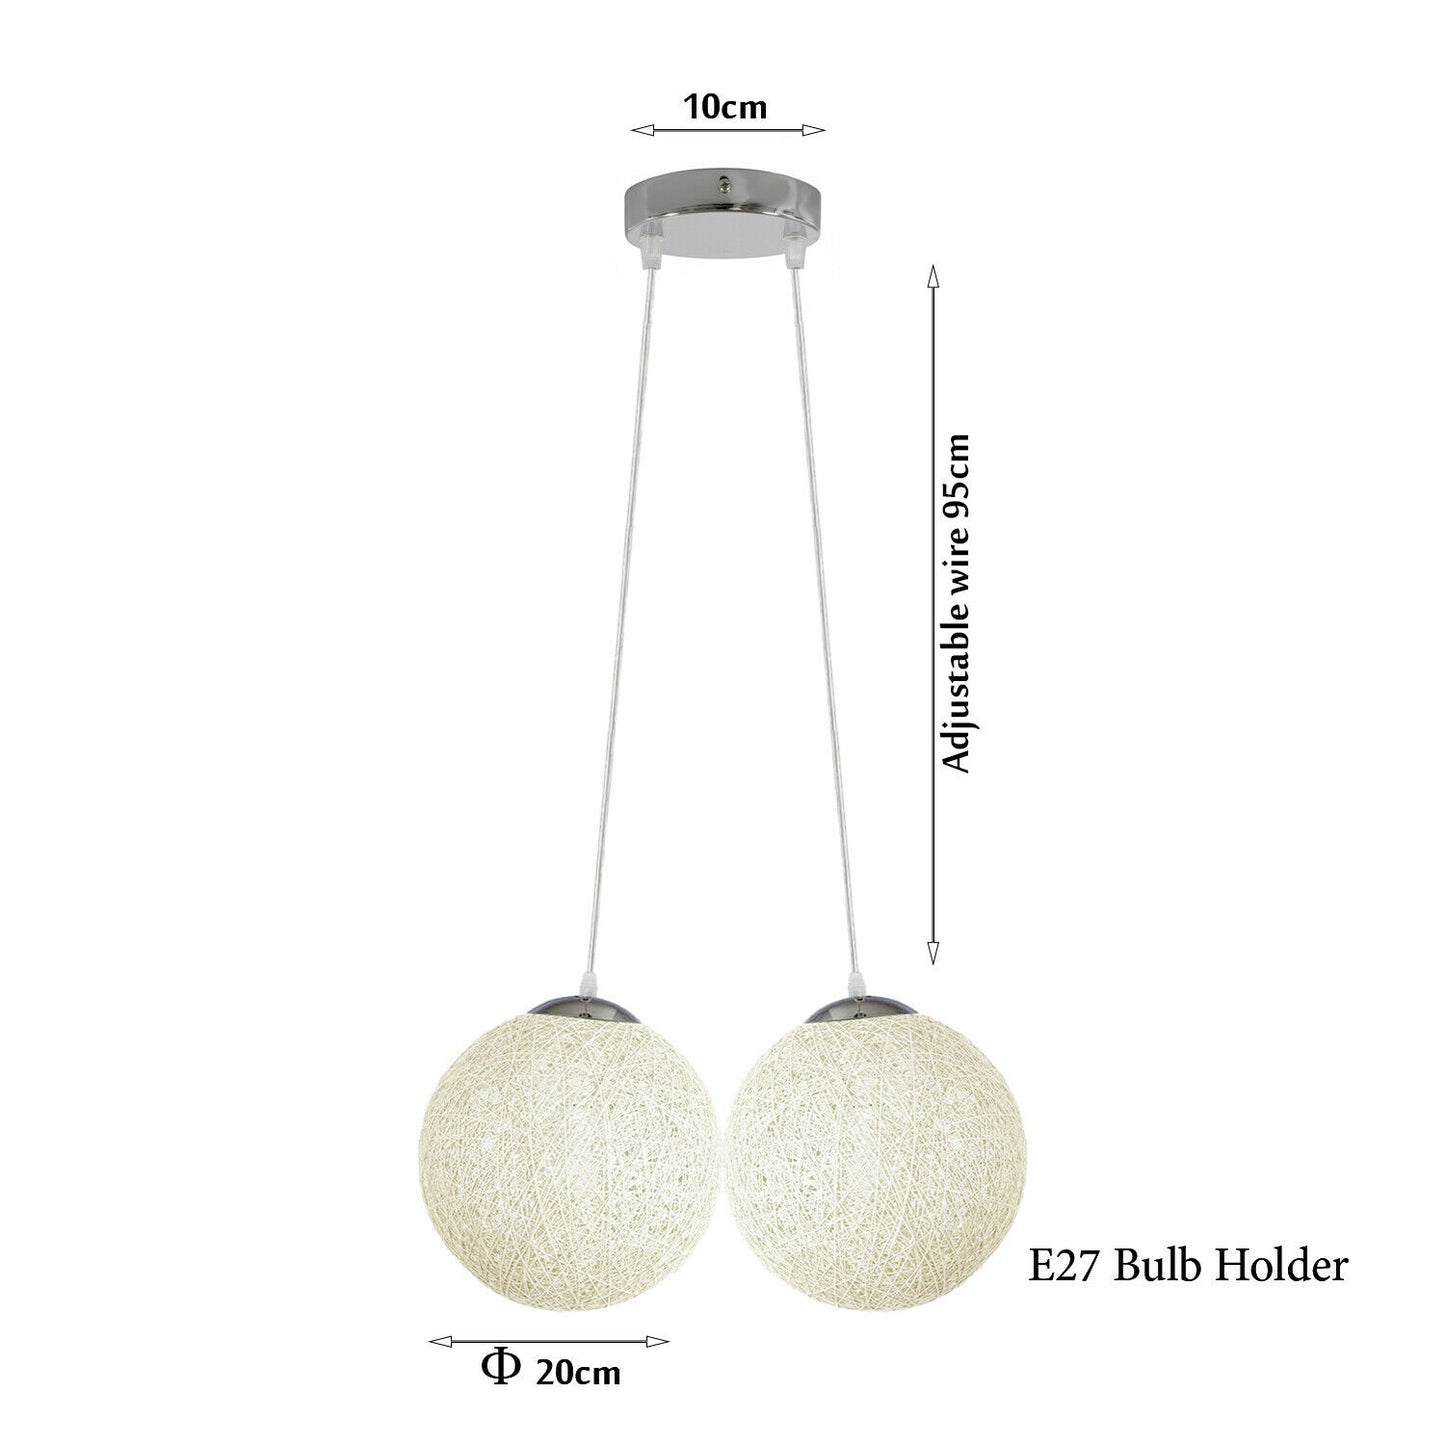 Weiß Rattan Wicker Woven Ball Globe 2 Outlet Moderne Pendelleuchte Hängende Deckenleuchte